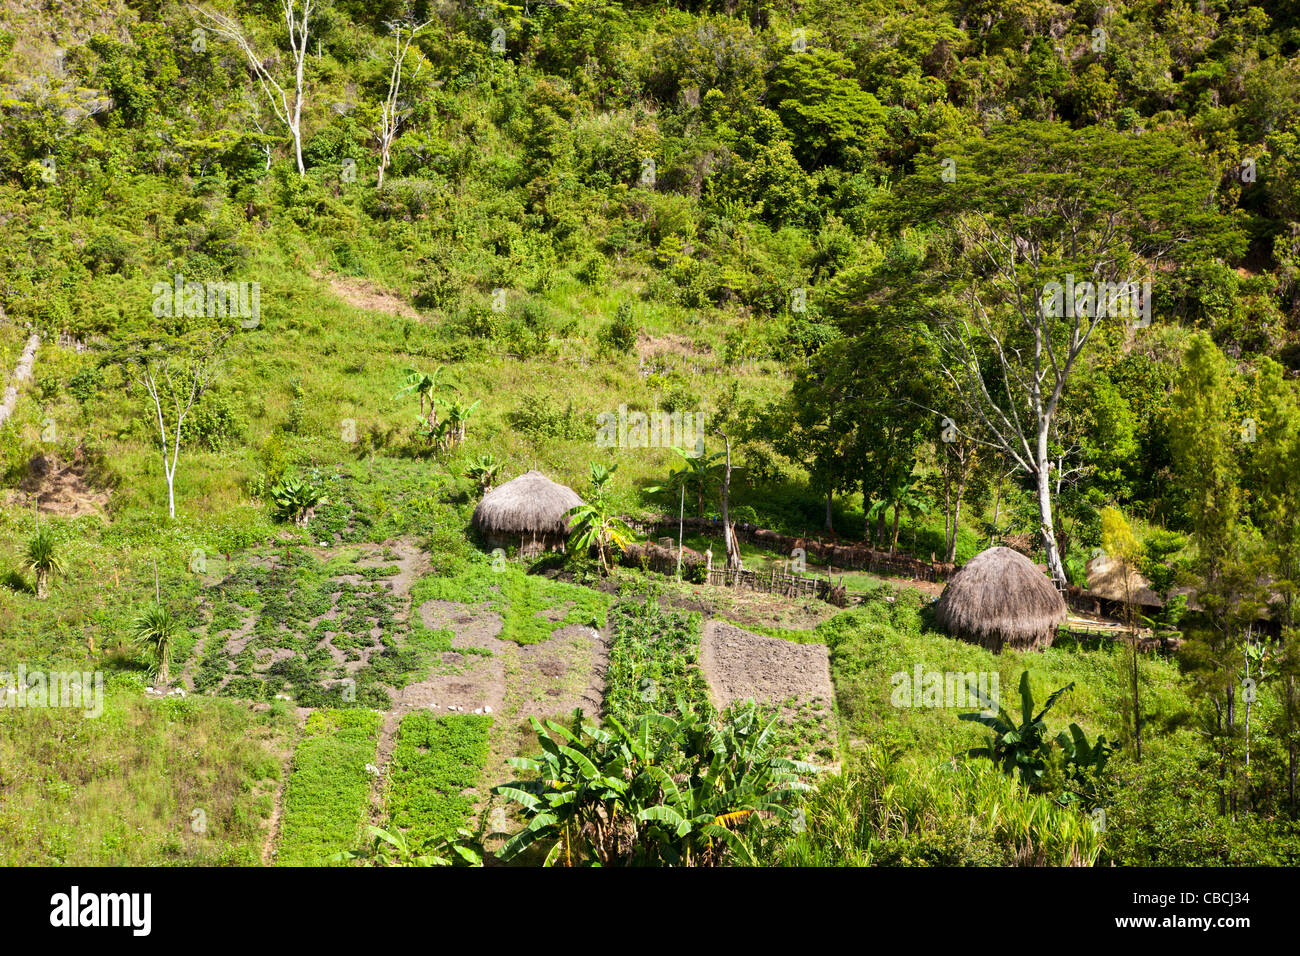 Traditionelles Dorf der Dani im Baliem-Tal, West-Papua, Indonesien Stockfoto